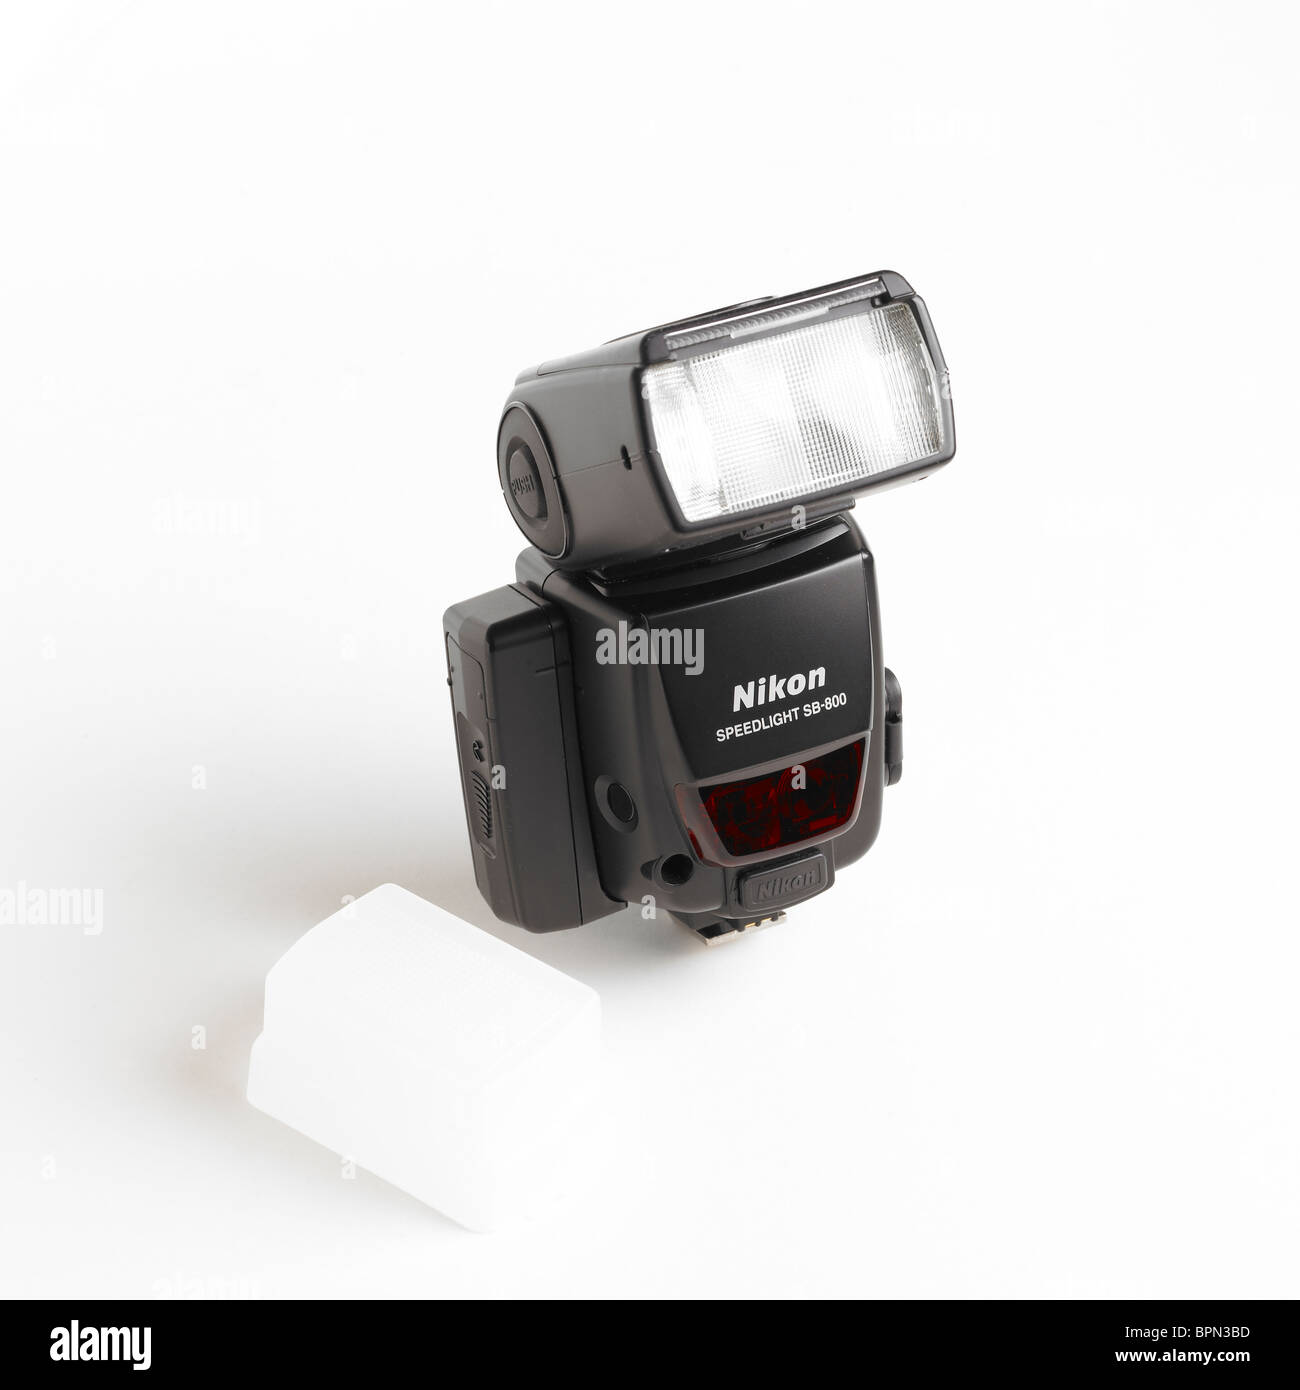 Nikon SB800 Speedlight on White Background Stock Photo - Alamy